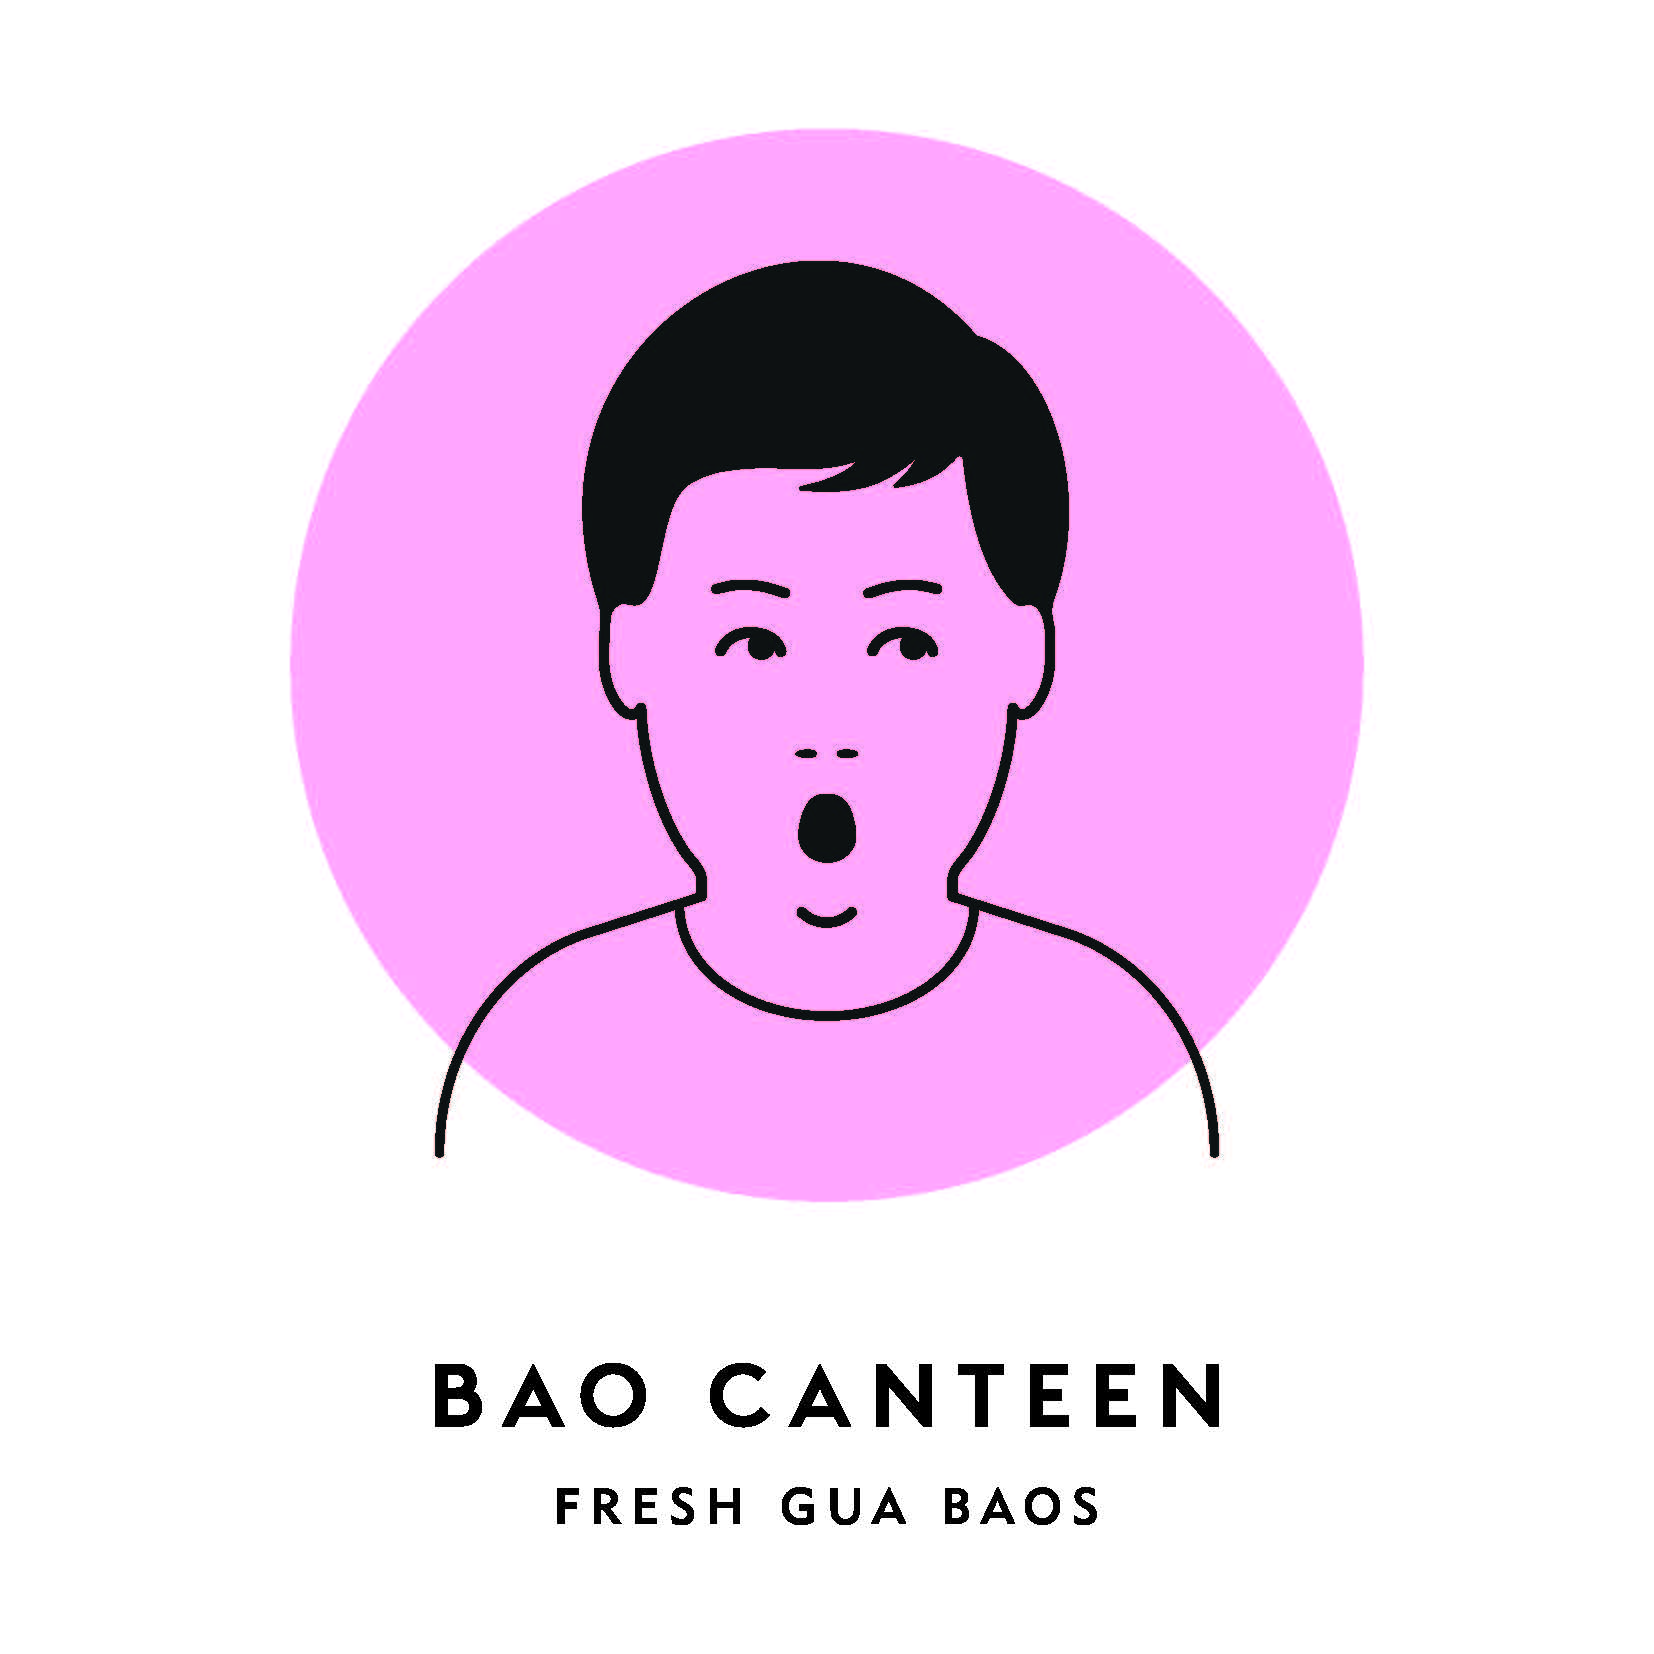 Bao Canteen